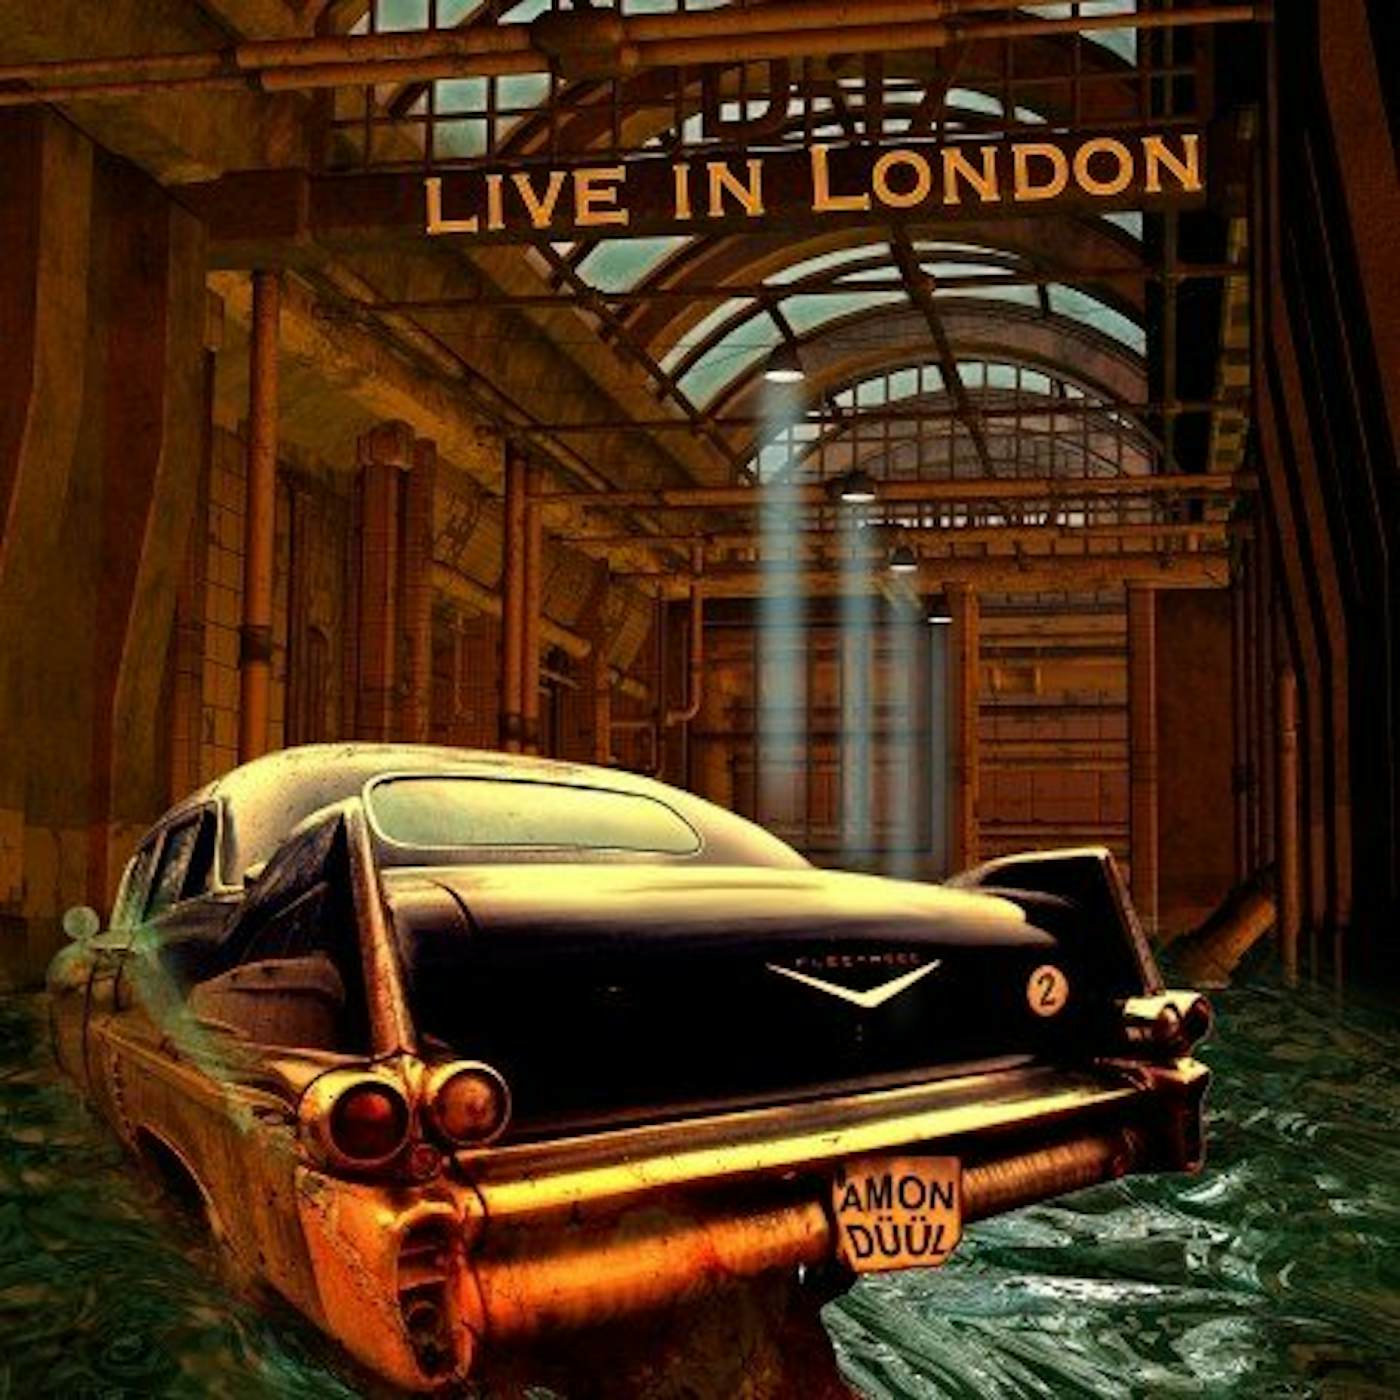 Amon Düül II LIVE IN LONDON CD